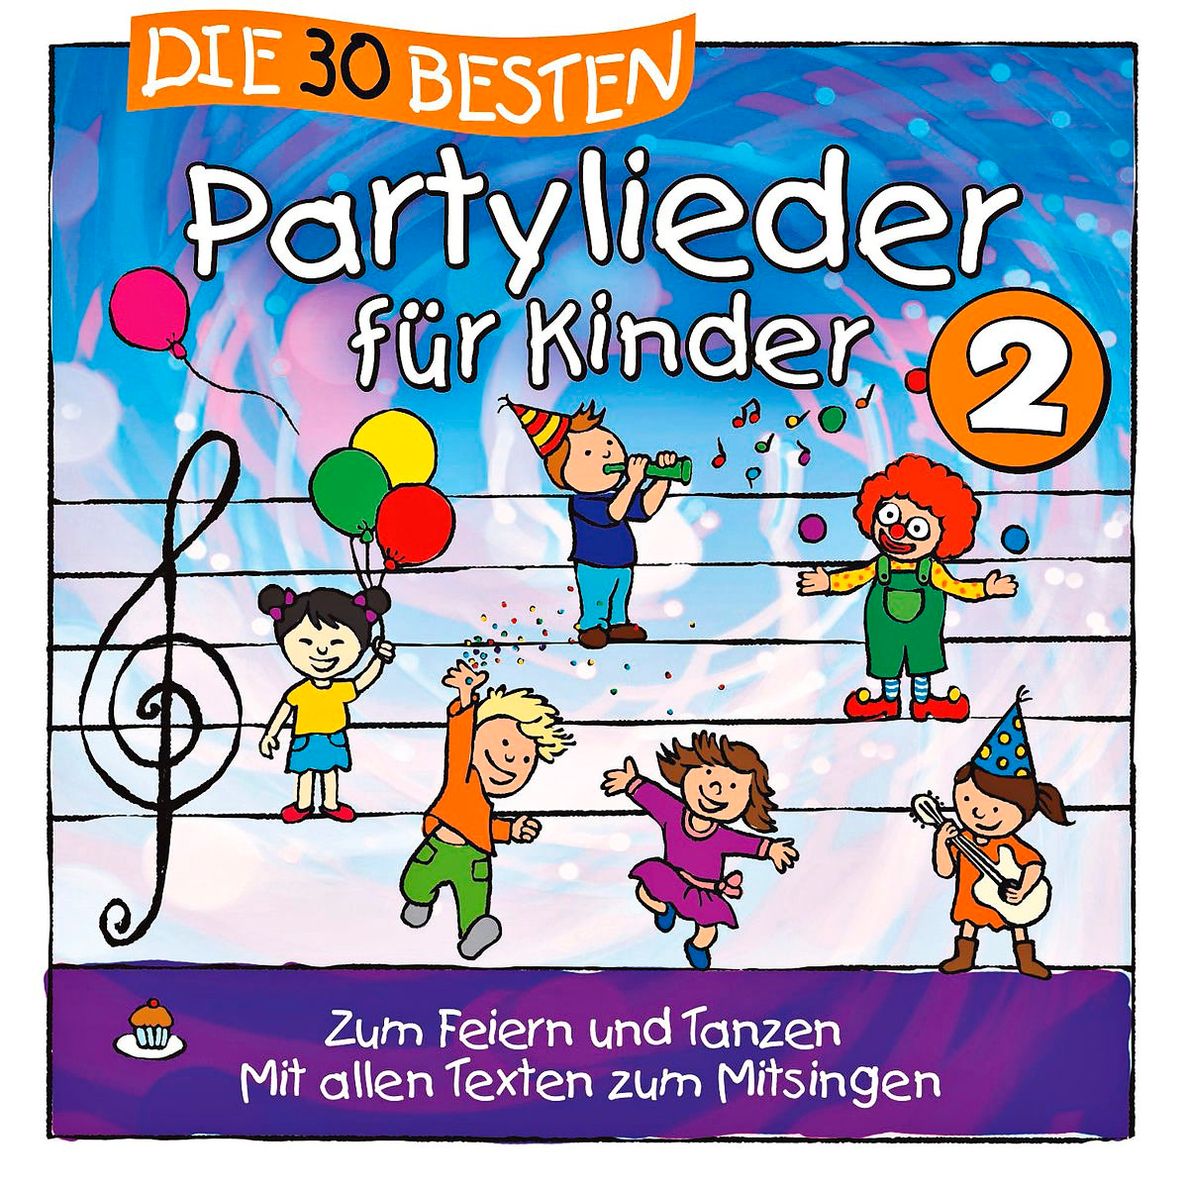 Die 30 besten Partylieder für Kinder 2 von Karsten Glück & Die Kita-Frösche  Simone Sommerland | Weltbild.ch